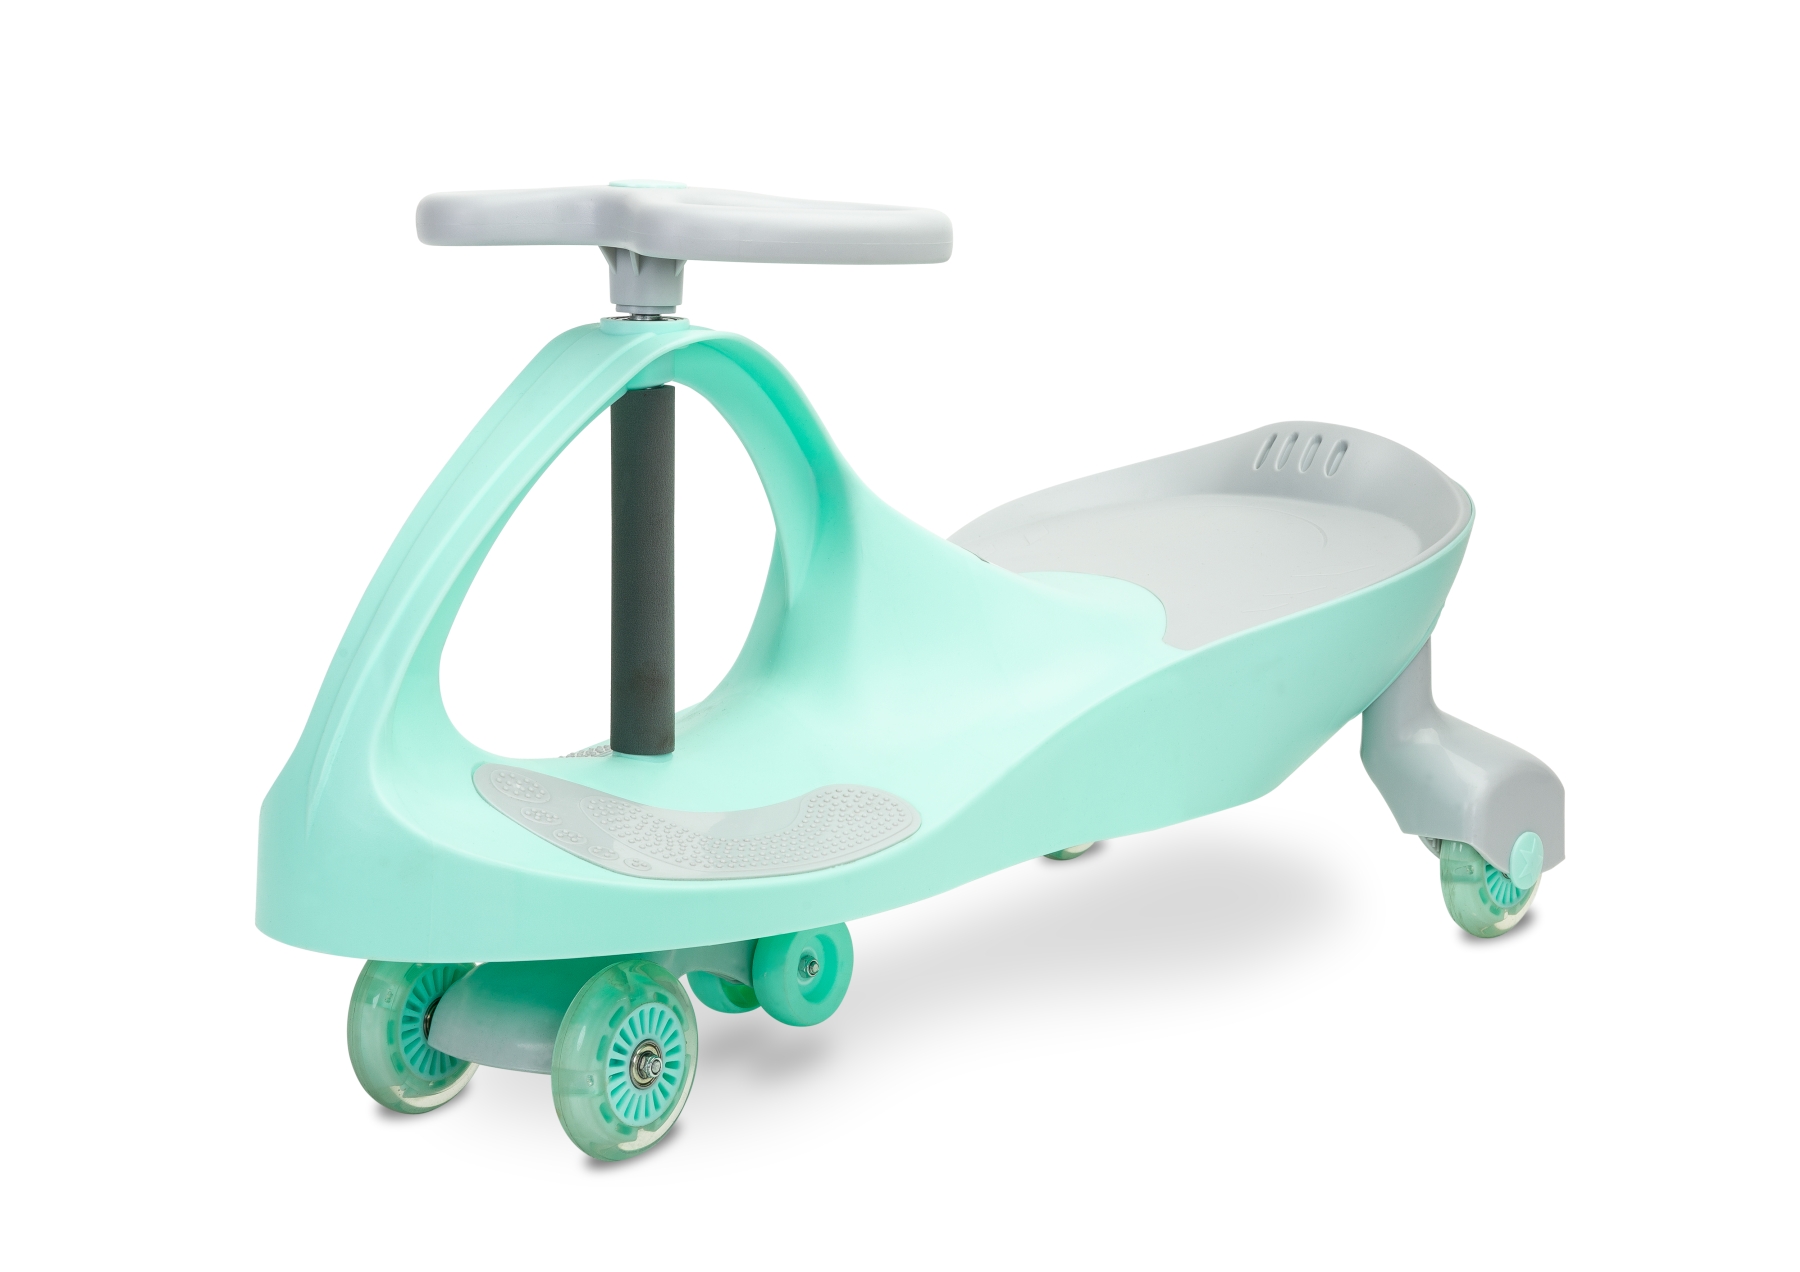 Jeździk grawitacyjny spinner dla dzieci i nie tylko marki toyz